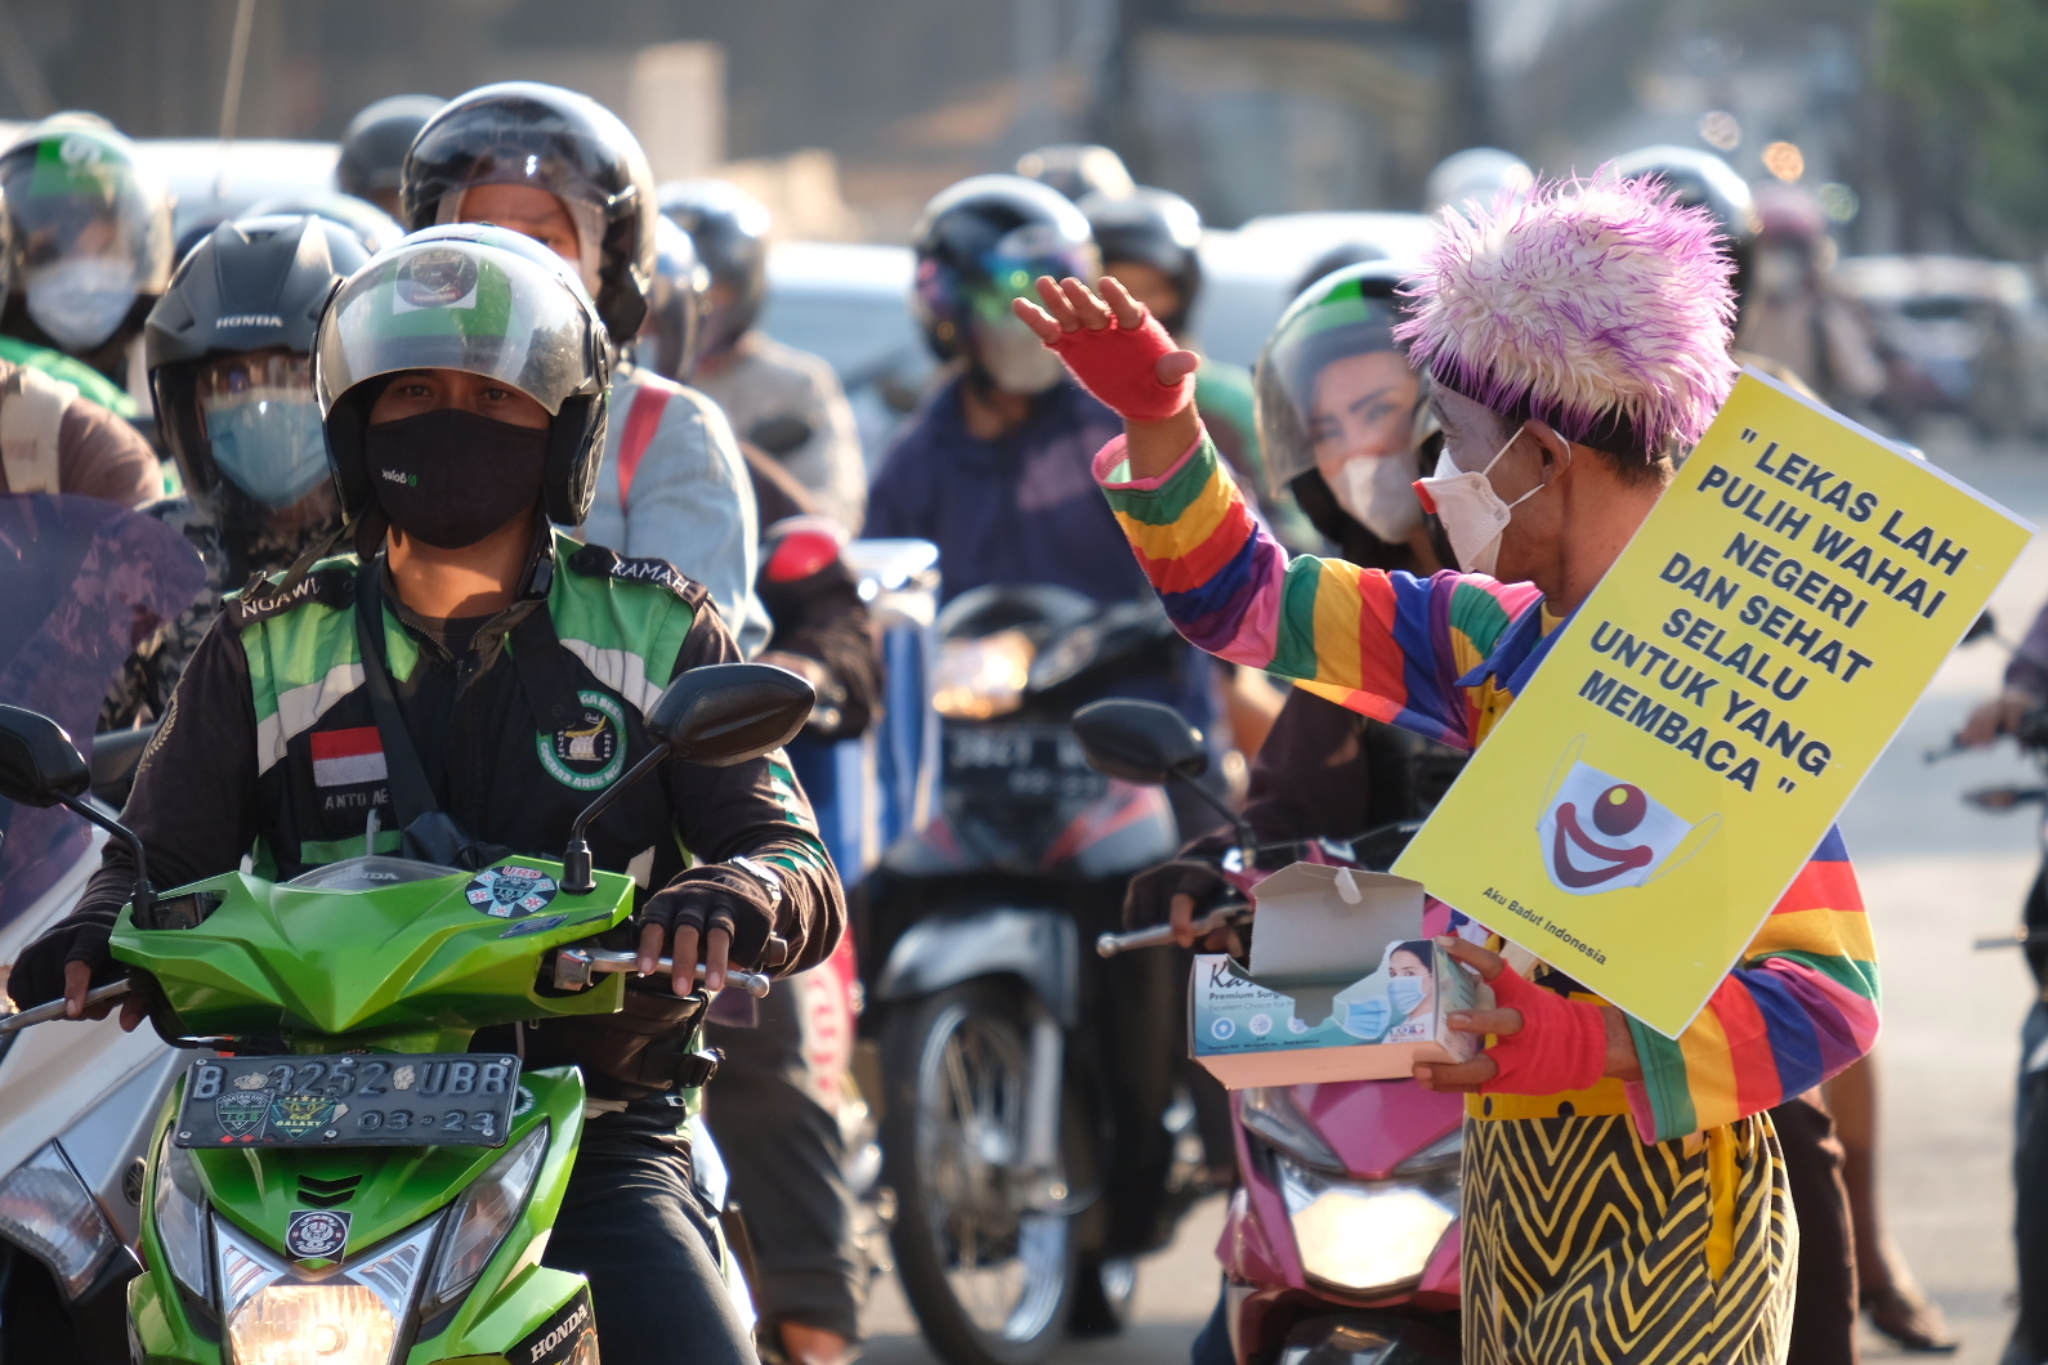 <p>Anggota Komunitas Aku Badut Indonesia(ABI) melakukan aksi kampanye untuk selalu menggunakan masker di kawasan Simpang Fatamawati, Jakarta Selatan, Senin, 12 Juli 2021. Foto: Ismail Pohan/TrenAsia</p>
